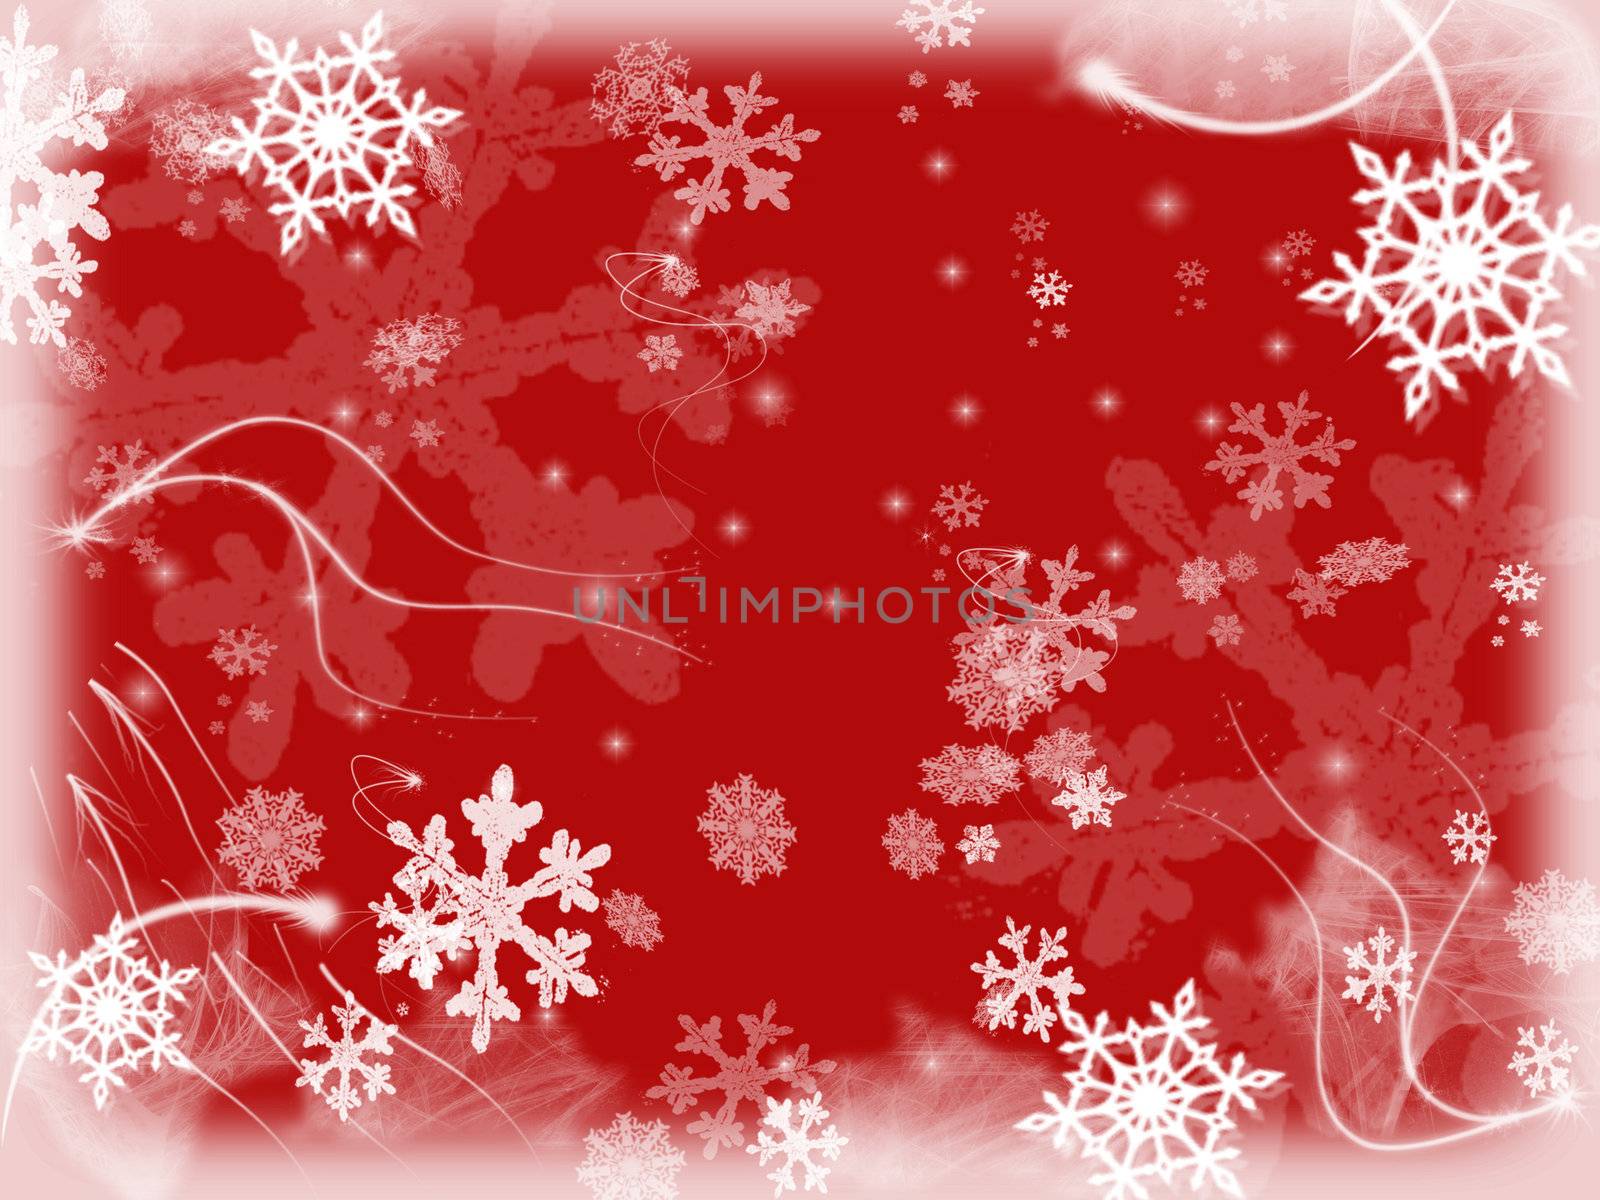 snowflakes 2 by marinini